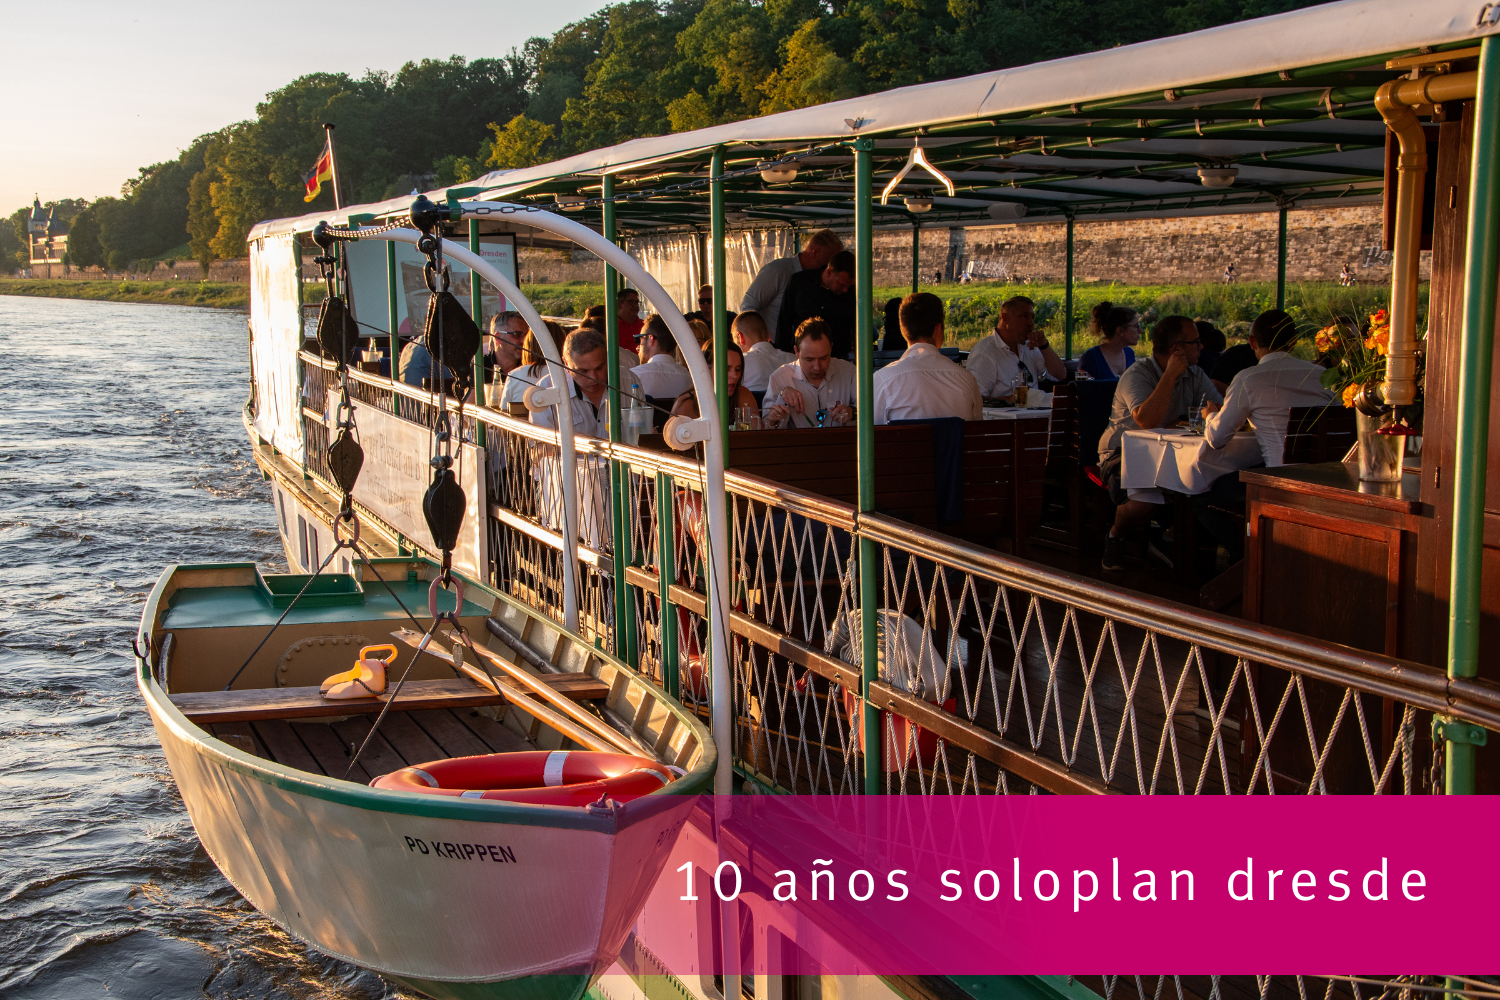 Décimo aniversario de la sucursal de Soloplan en Dresde